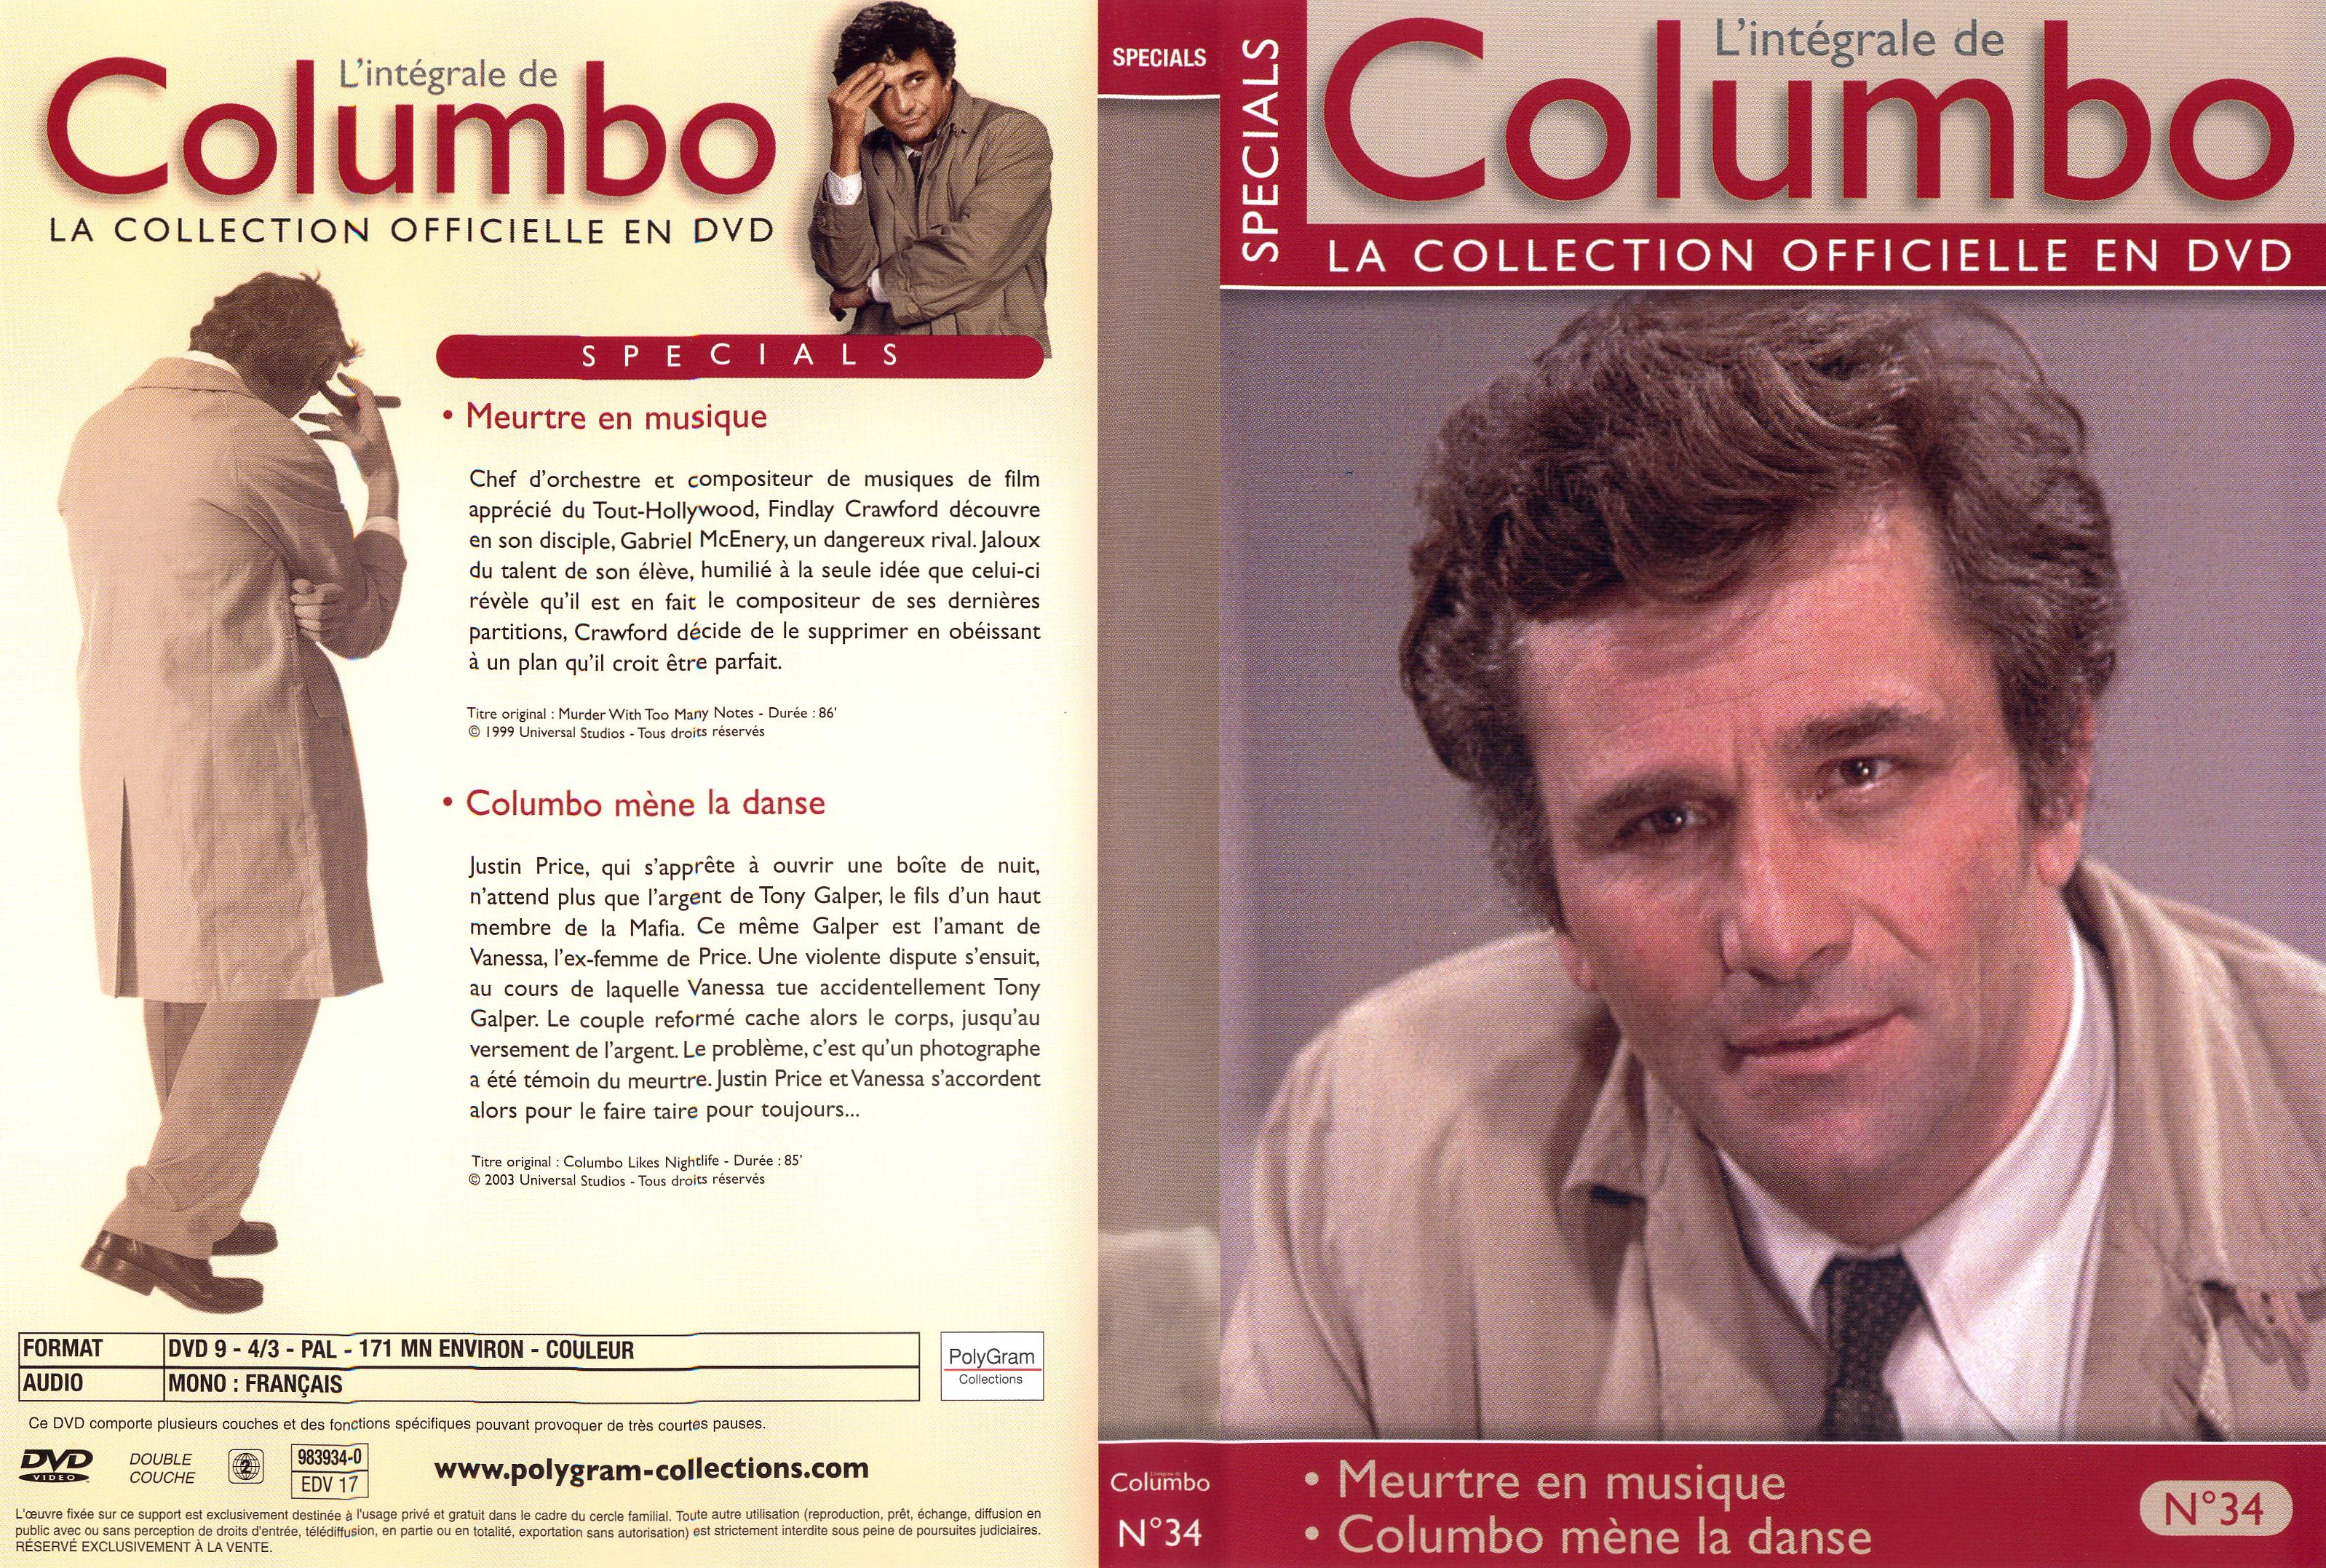 Jaquette DVD Columbo Spcials dvd 34